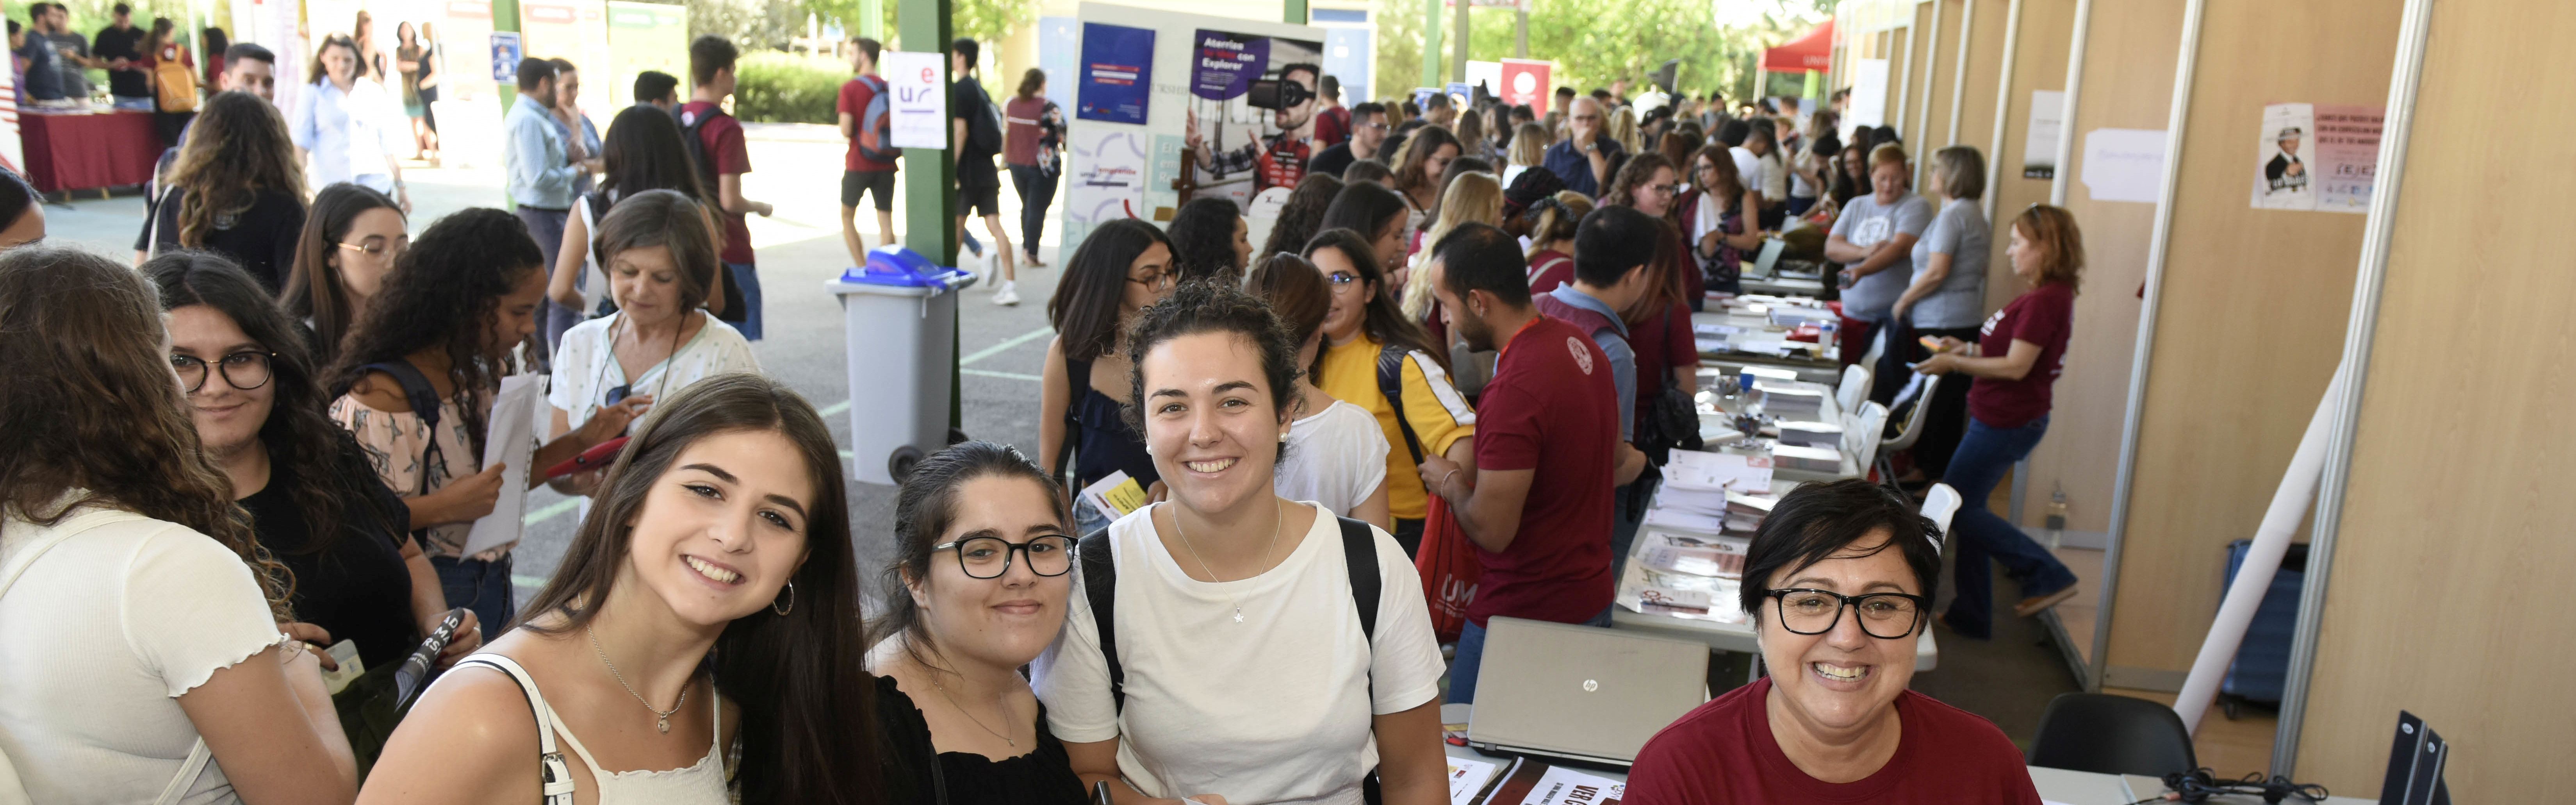 La Universidad de Murcia enseña sus servicios para estudiantes